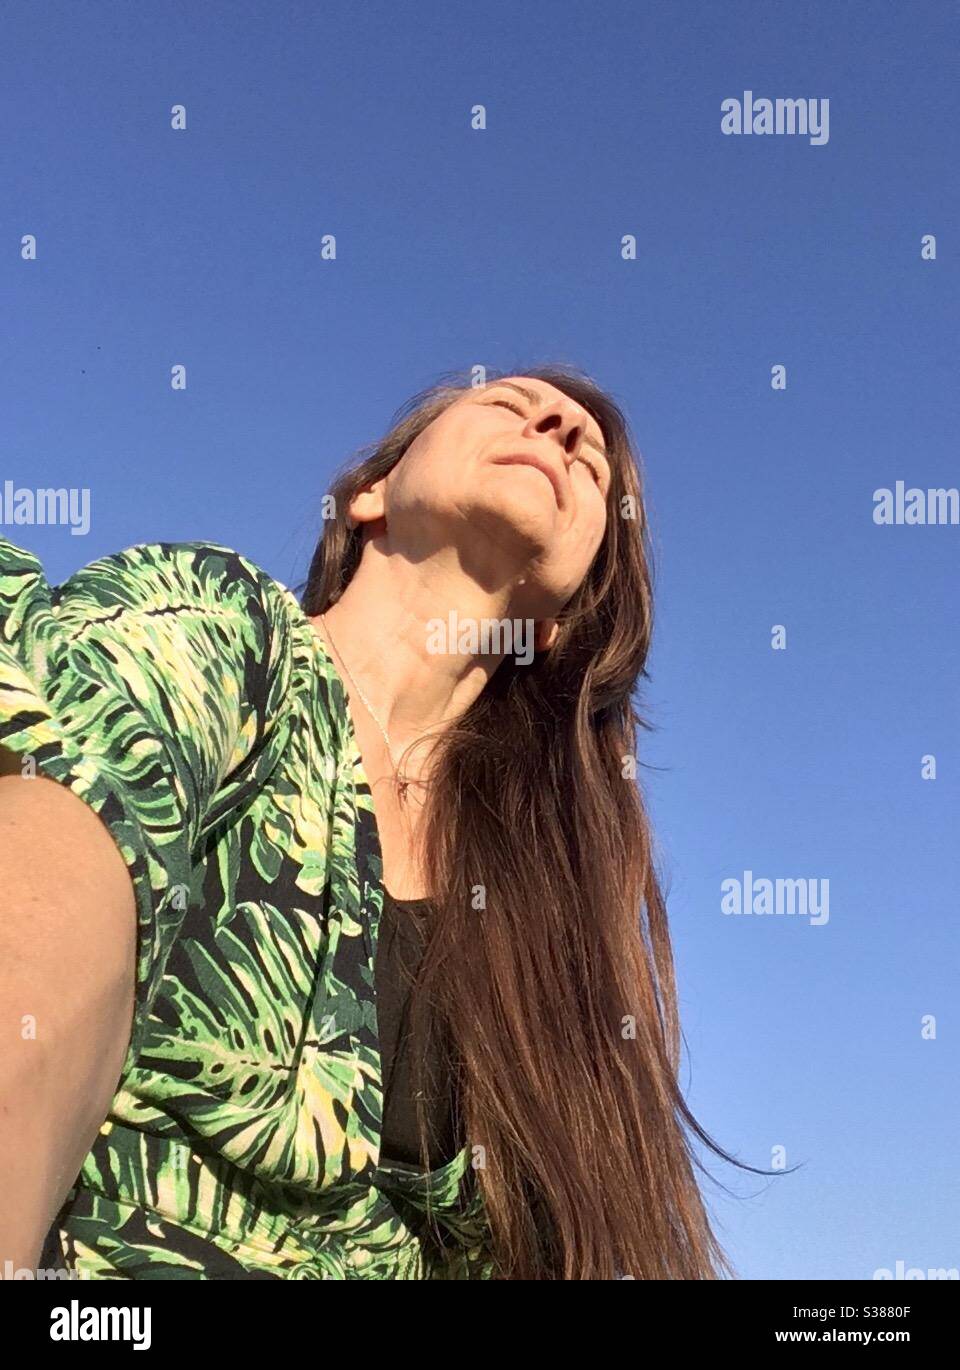 Selfie, Frau mit langen geraden Haaren in hellen Sommerkleid genießen die Sonne scheint auf ihrem Gesicht mit dem perfekten blauen Himmel als Hintergrund, Model Release verfügbar Stockfoto